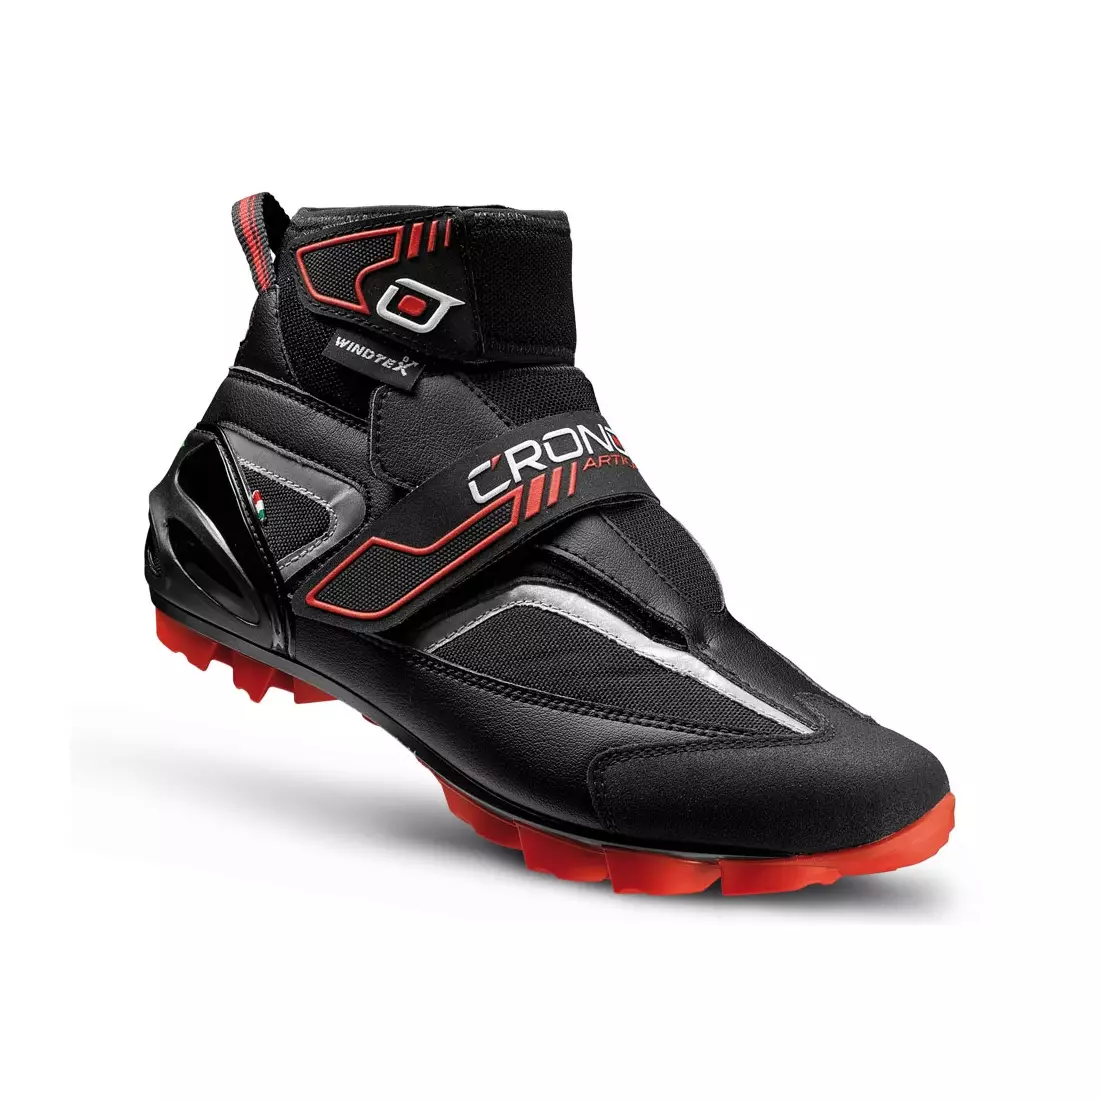 CRONO ARTICA MTB - pantofi de iarnă pentru ciclism MTB - culoare: Negru